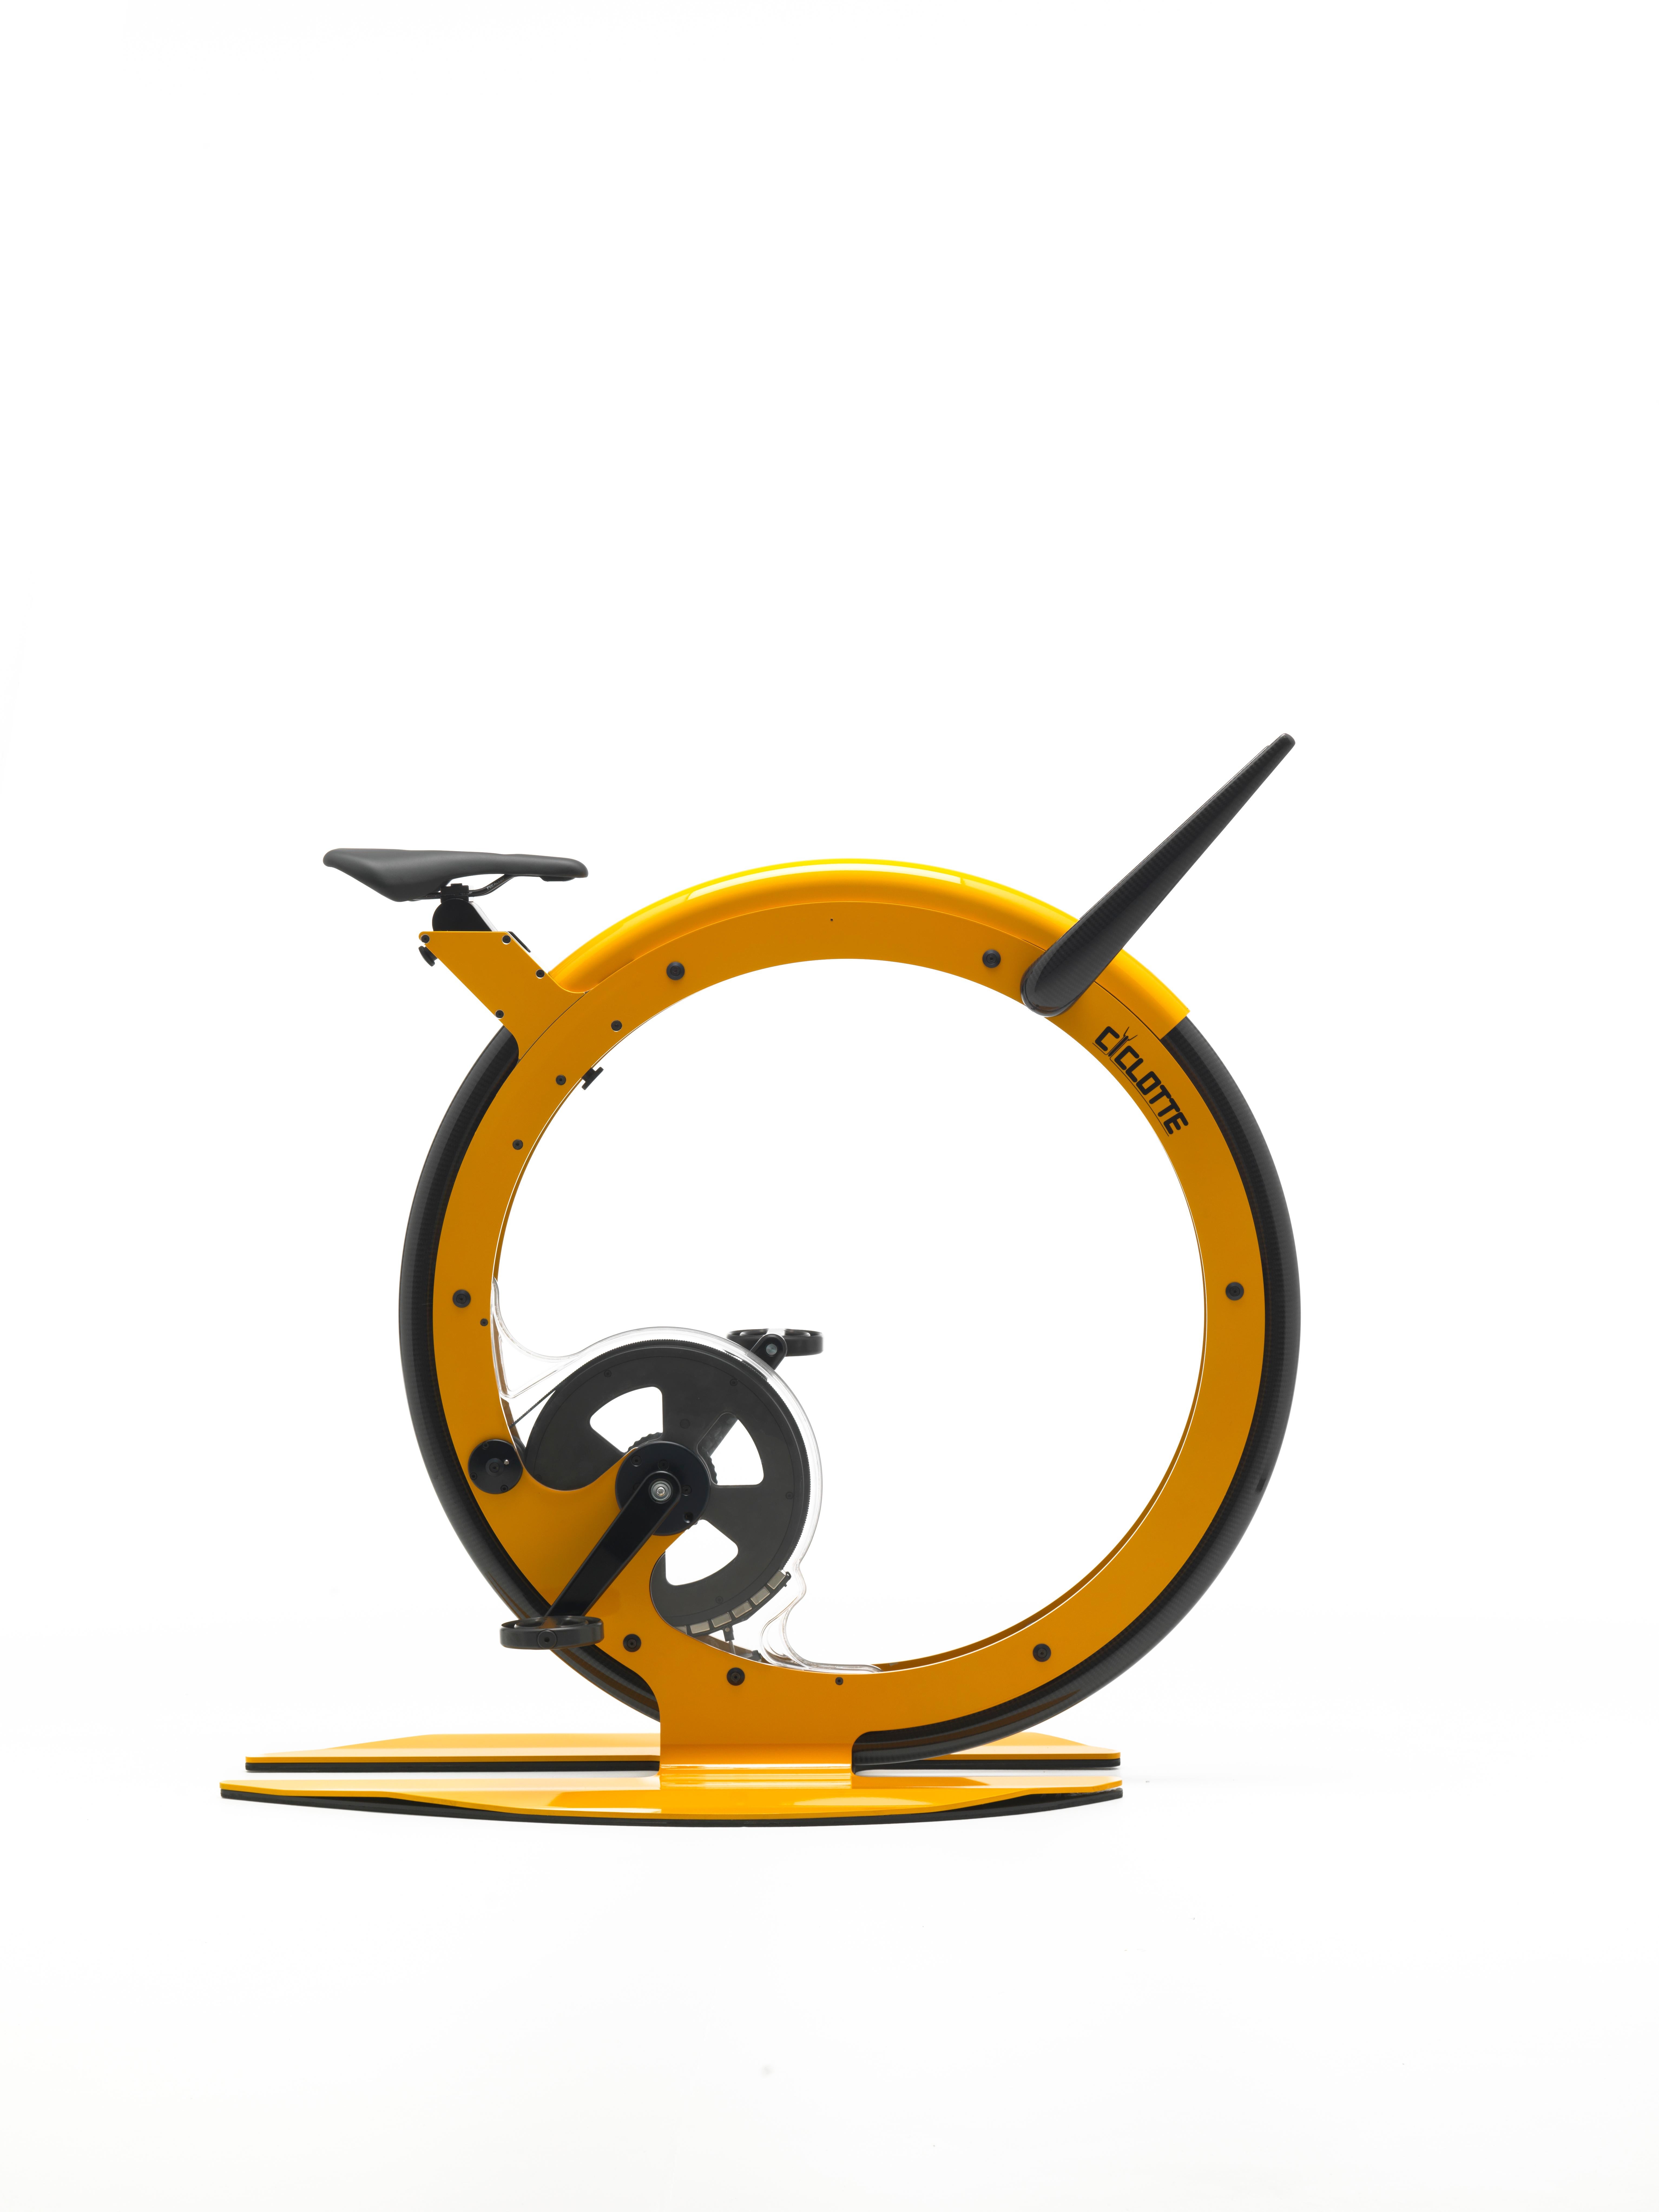 Ciclotte bike ist ein innovativer Heimtrainer, entworfen und hergestellt in Italien, der Idee, Form und Technologie vereint und die traditionellen ästhetischen und funktionellen Werte eines Heimtrainers neu überdenkt. Das Ciclotte-Fahrrad wurde aus